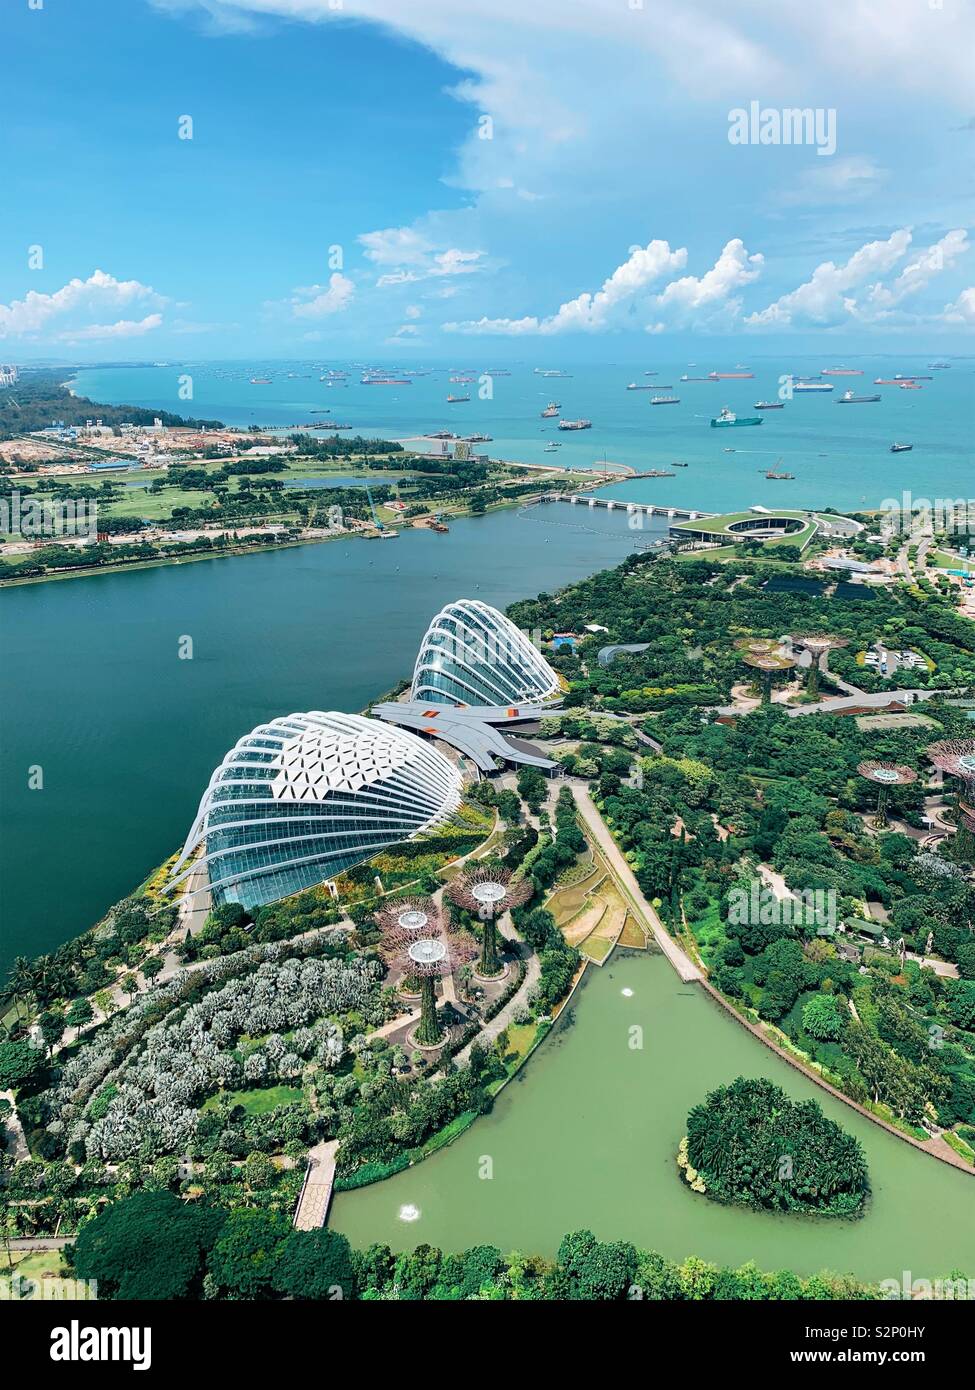 Singapour.Vue depuis le 57e étage de la marina, sable de la baie montrant les jardins près de la baie, les Super Trees, le Flower Dome, la forêt nuageuse et les navires dans le port Banque D'Images